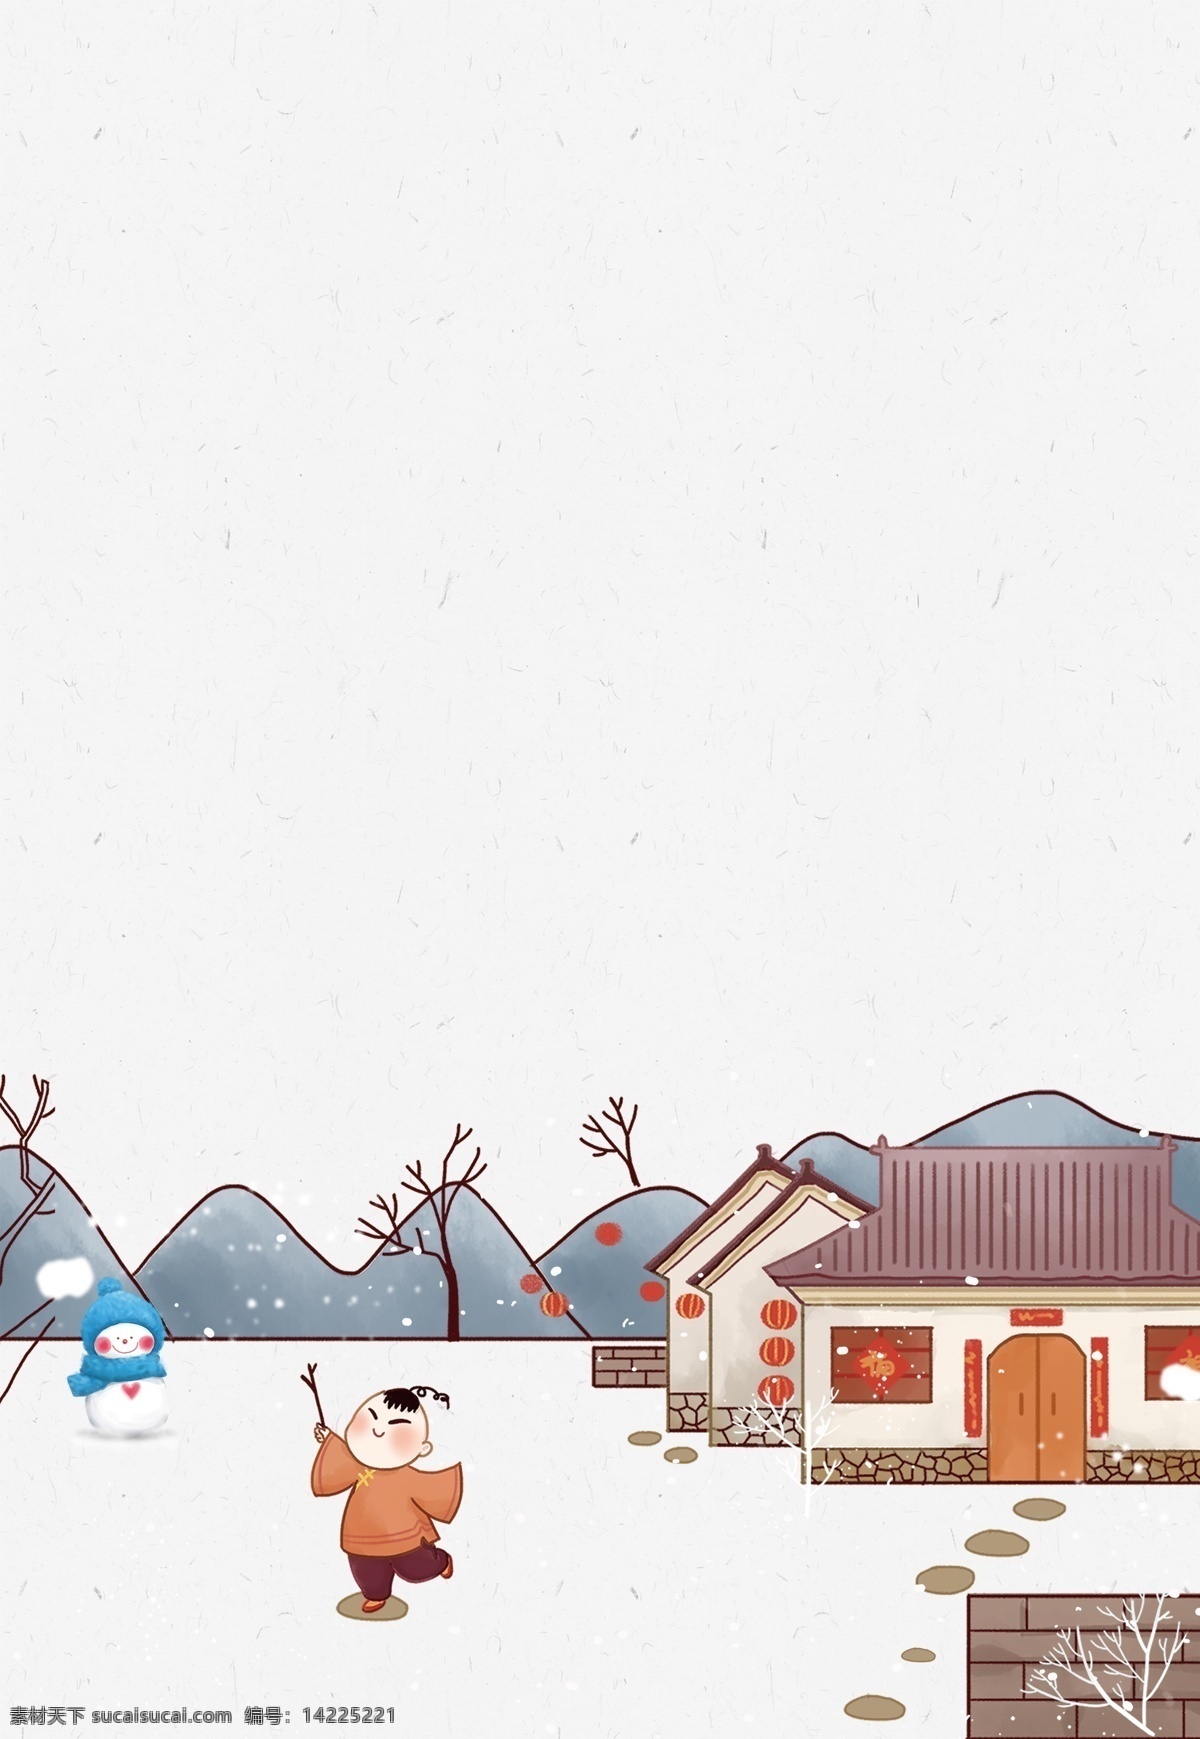 彩绘 中国 风 新年 大雪 背景 雪地 中国风 雪人 建筑 下雪 新年背景 远山 儿童孩子